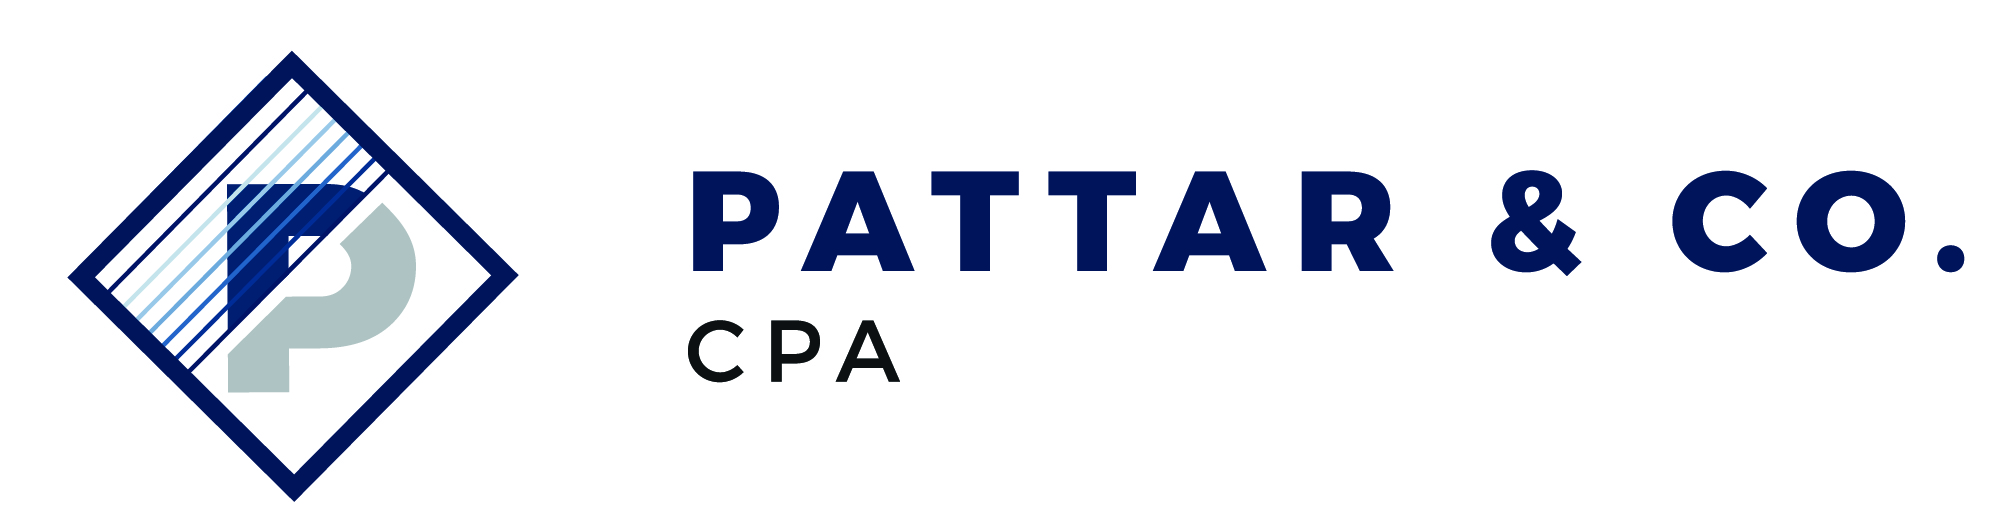 Pattar & Co. CPA, Inc.